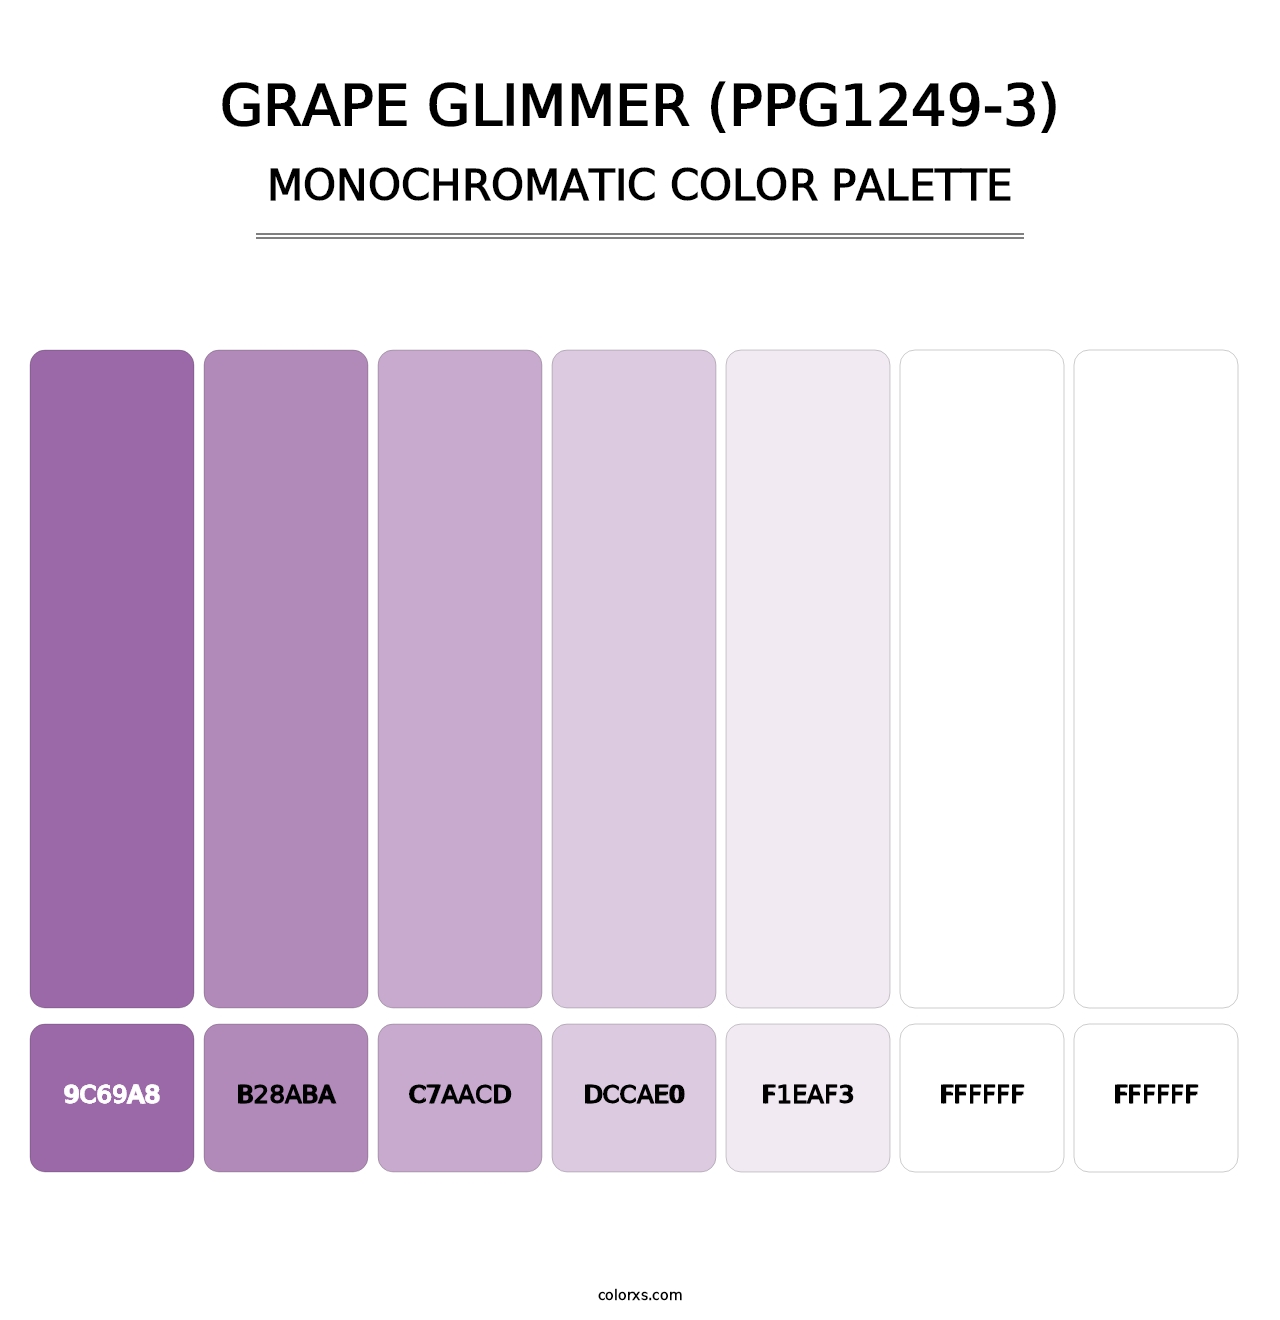 Grape Glimmer (PPG1249-3) - Monochromatic Color Palette